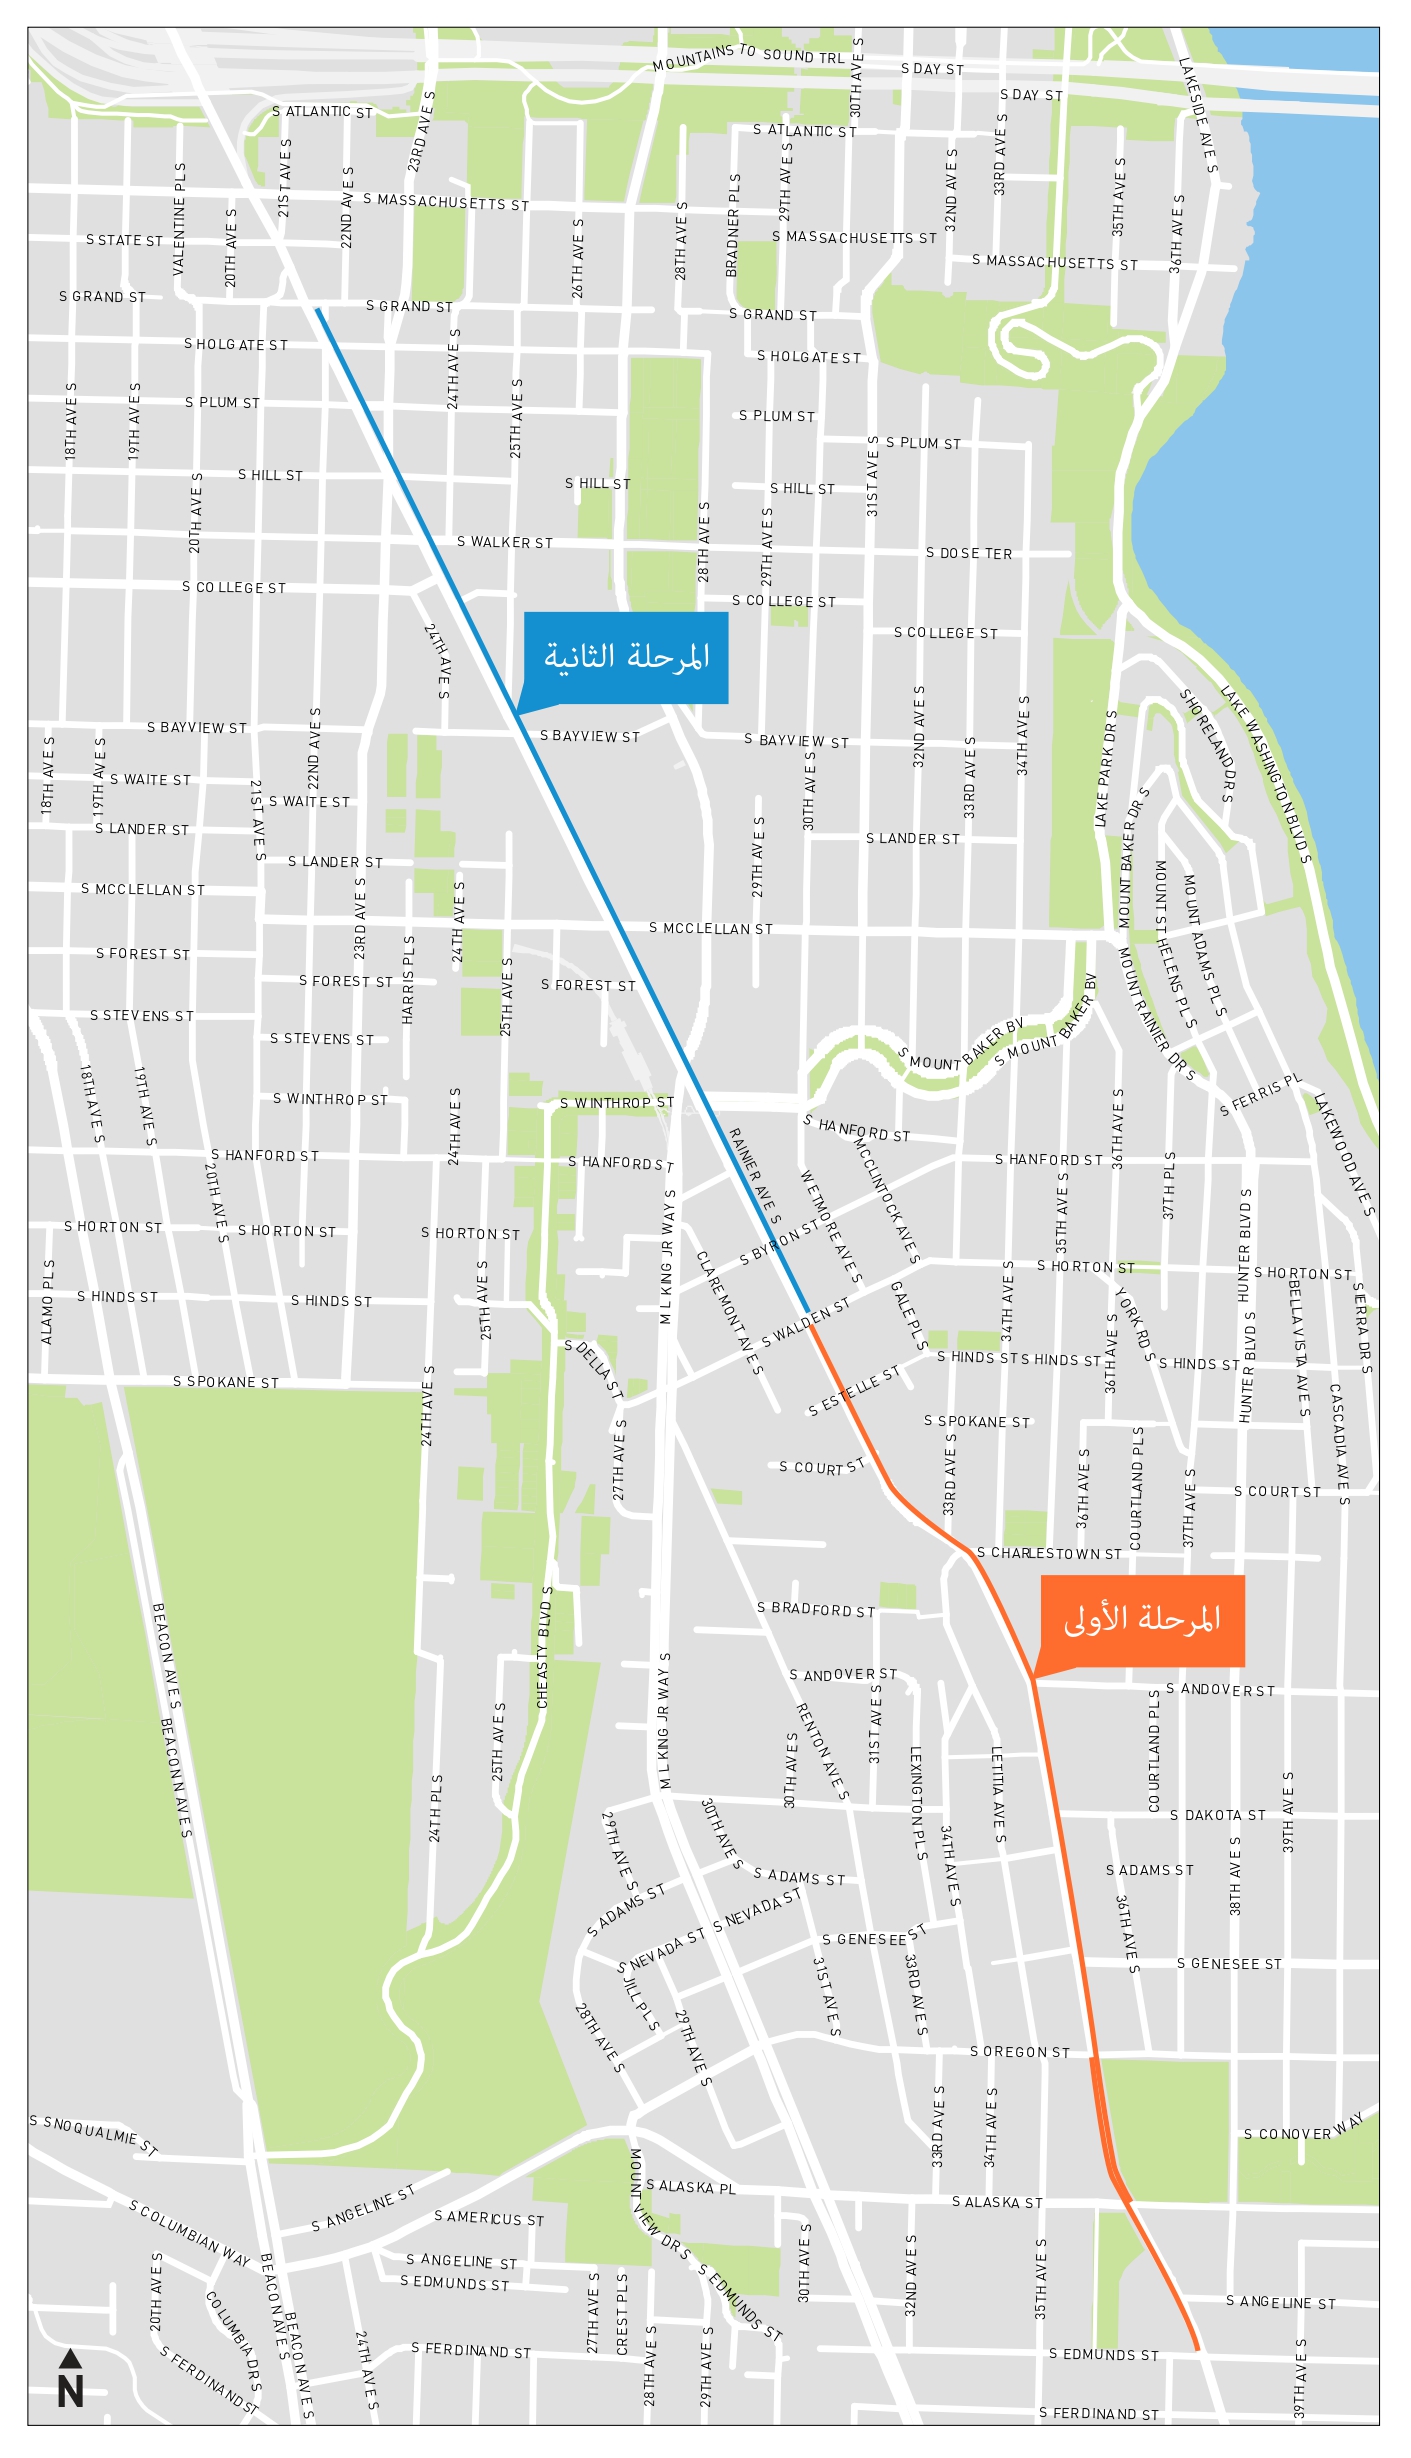 خريطة منطقة المشروع للممر المخصص للحافلات فقط الخاص بشارع Rainier Ave S، حيث يظهر المرحلتين 1 و 2 صعودًا على شارع Rainier Ave S.